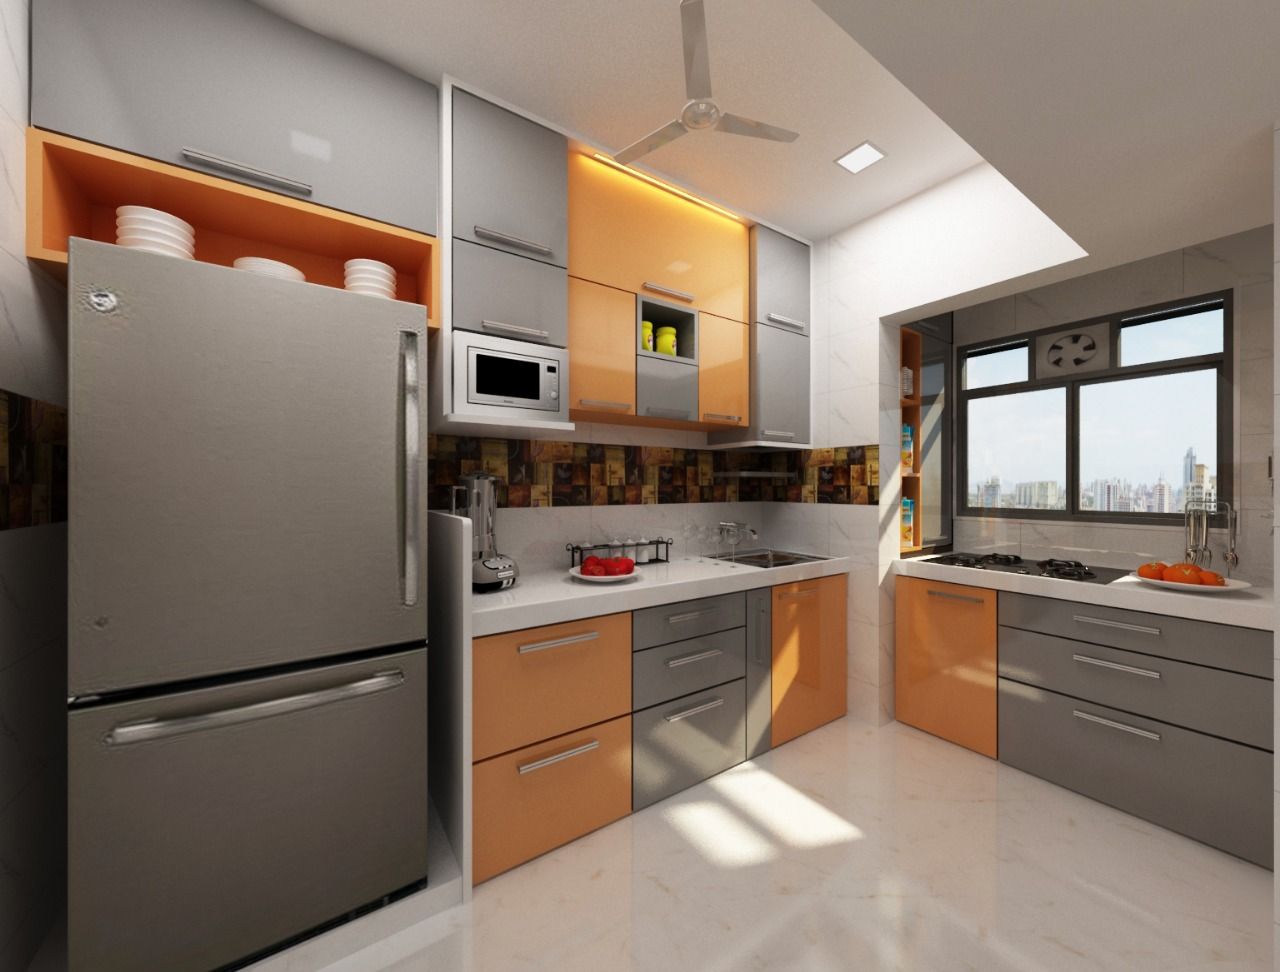 3BHK home design in Ghansoli, Mumbai , Square 4 Design & Build Square 4 Design & Build Кухня